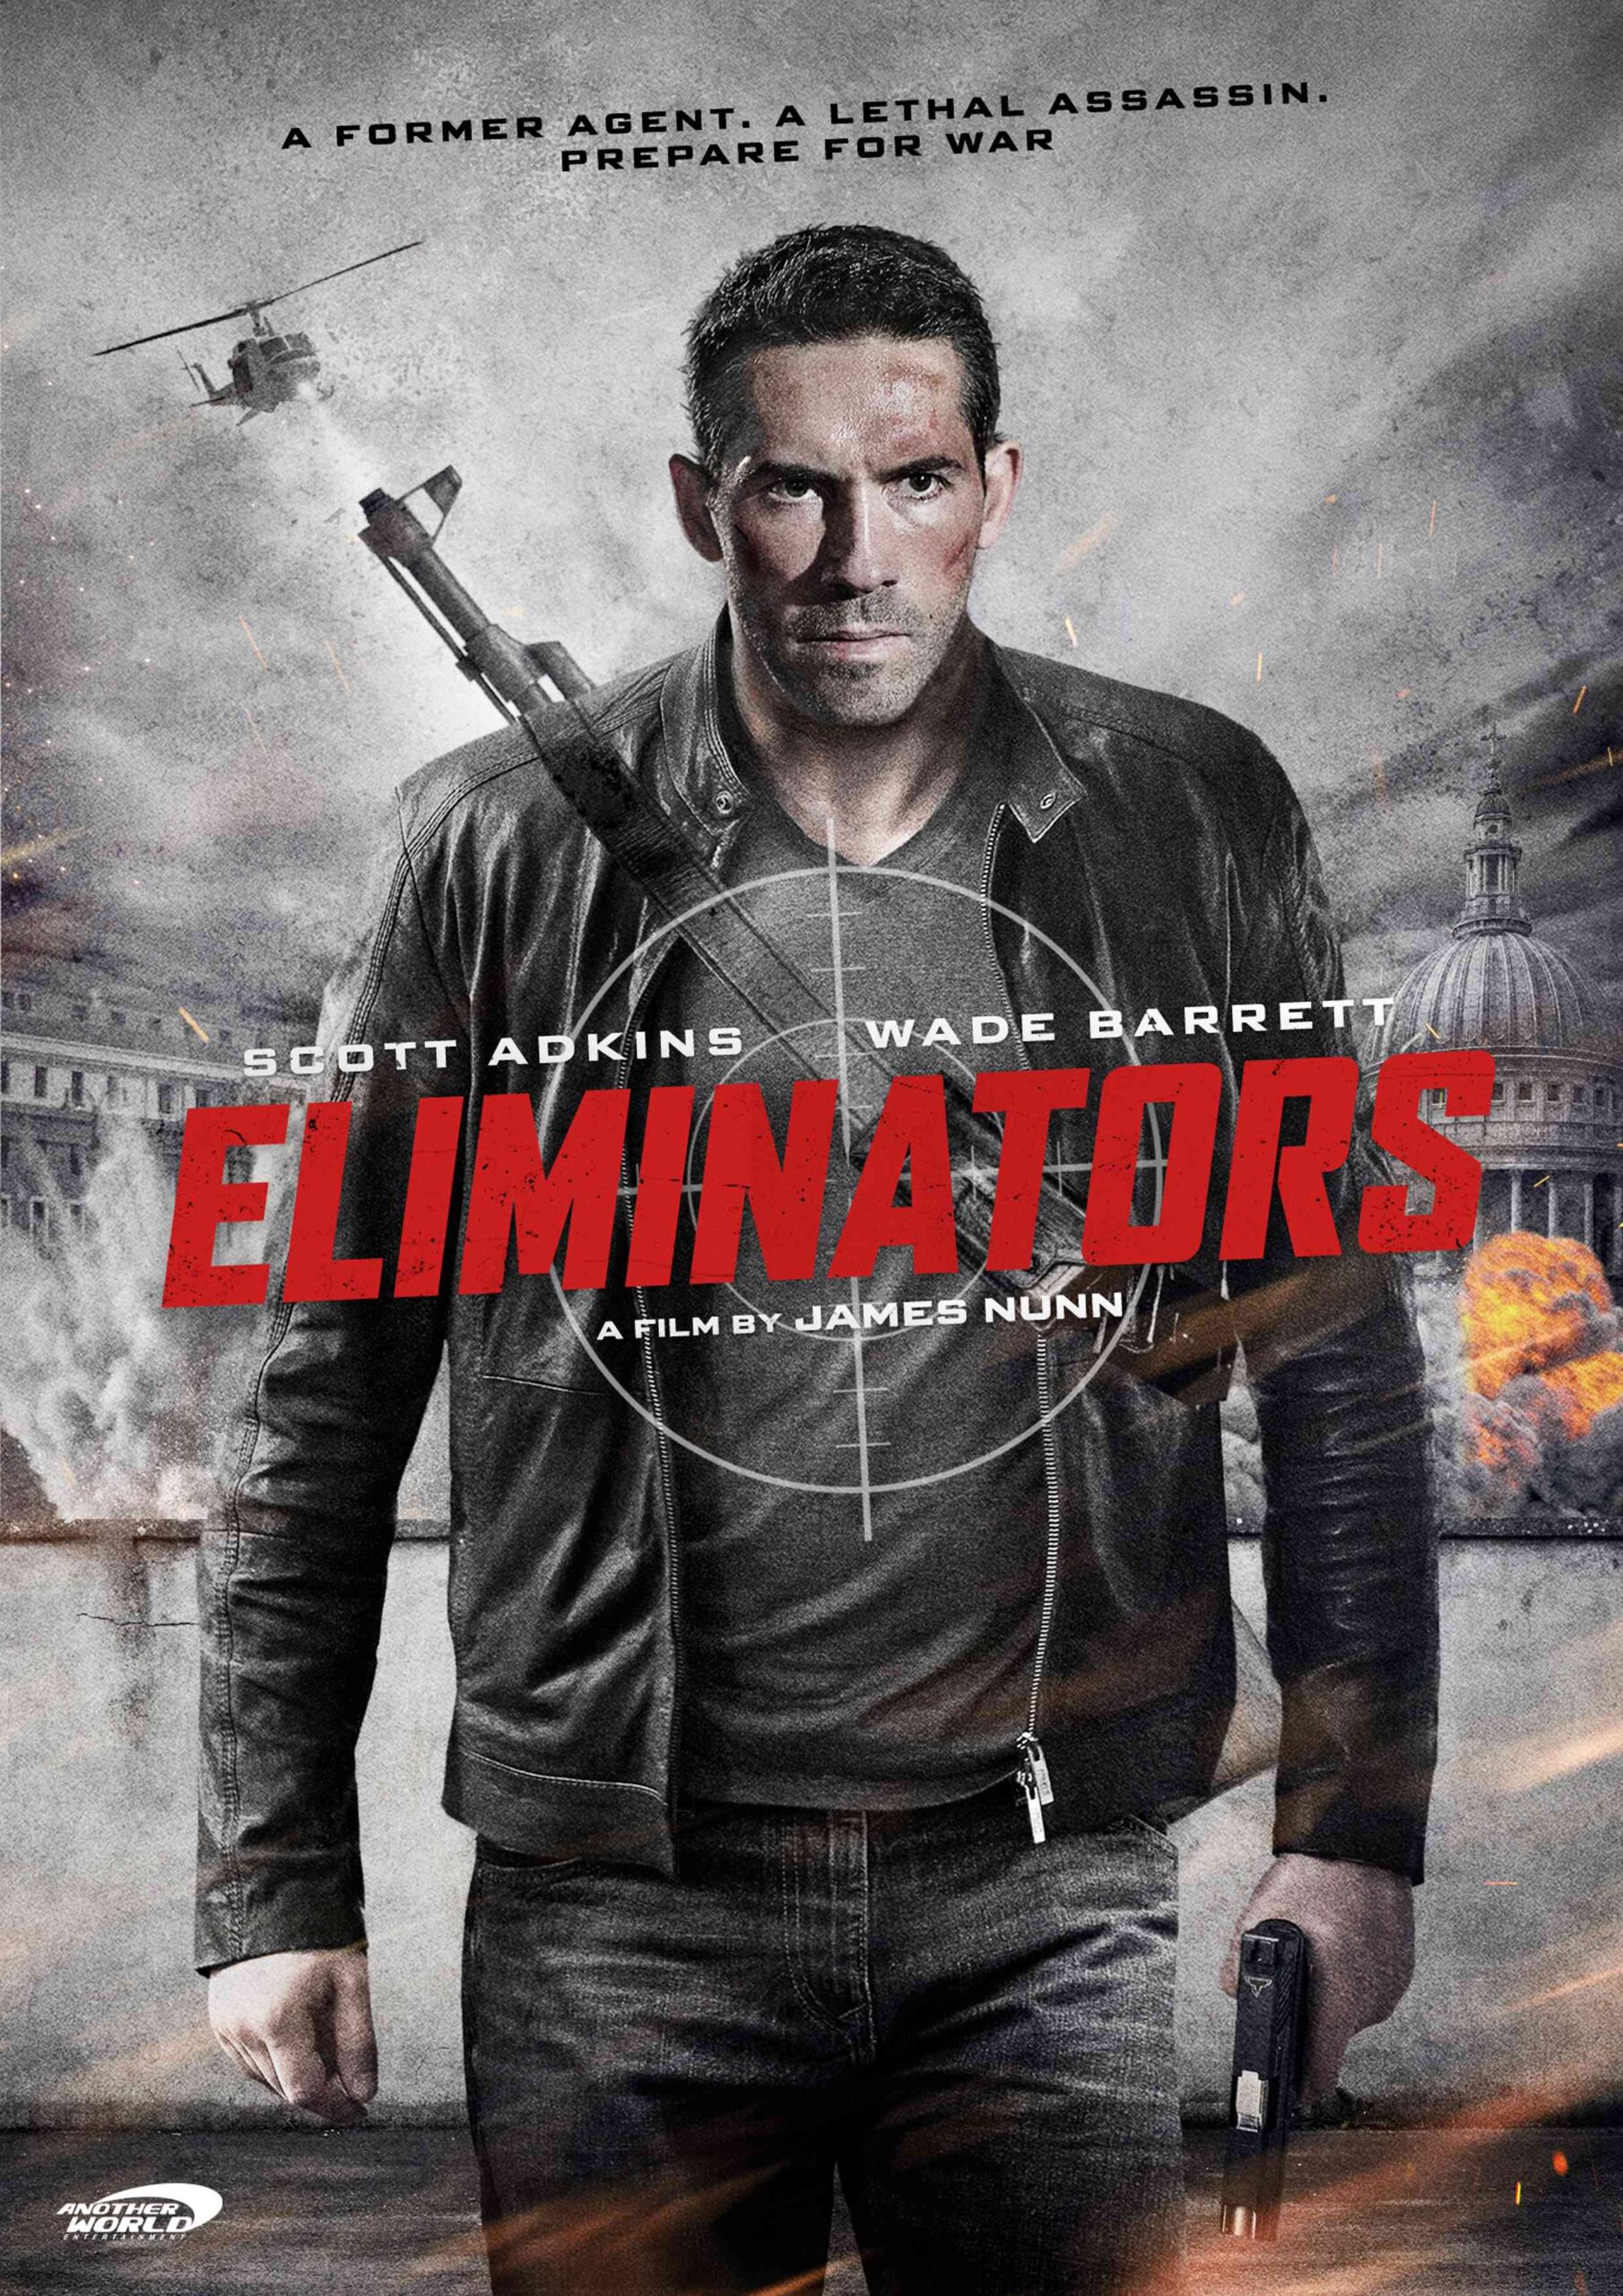 FULL MOVIE: Eliminators (2016)